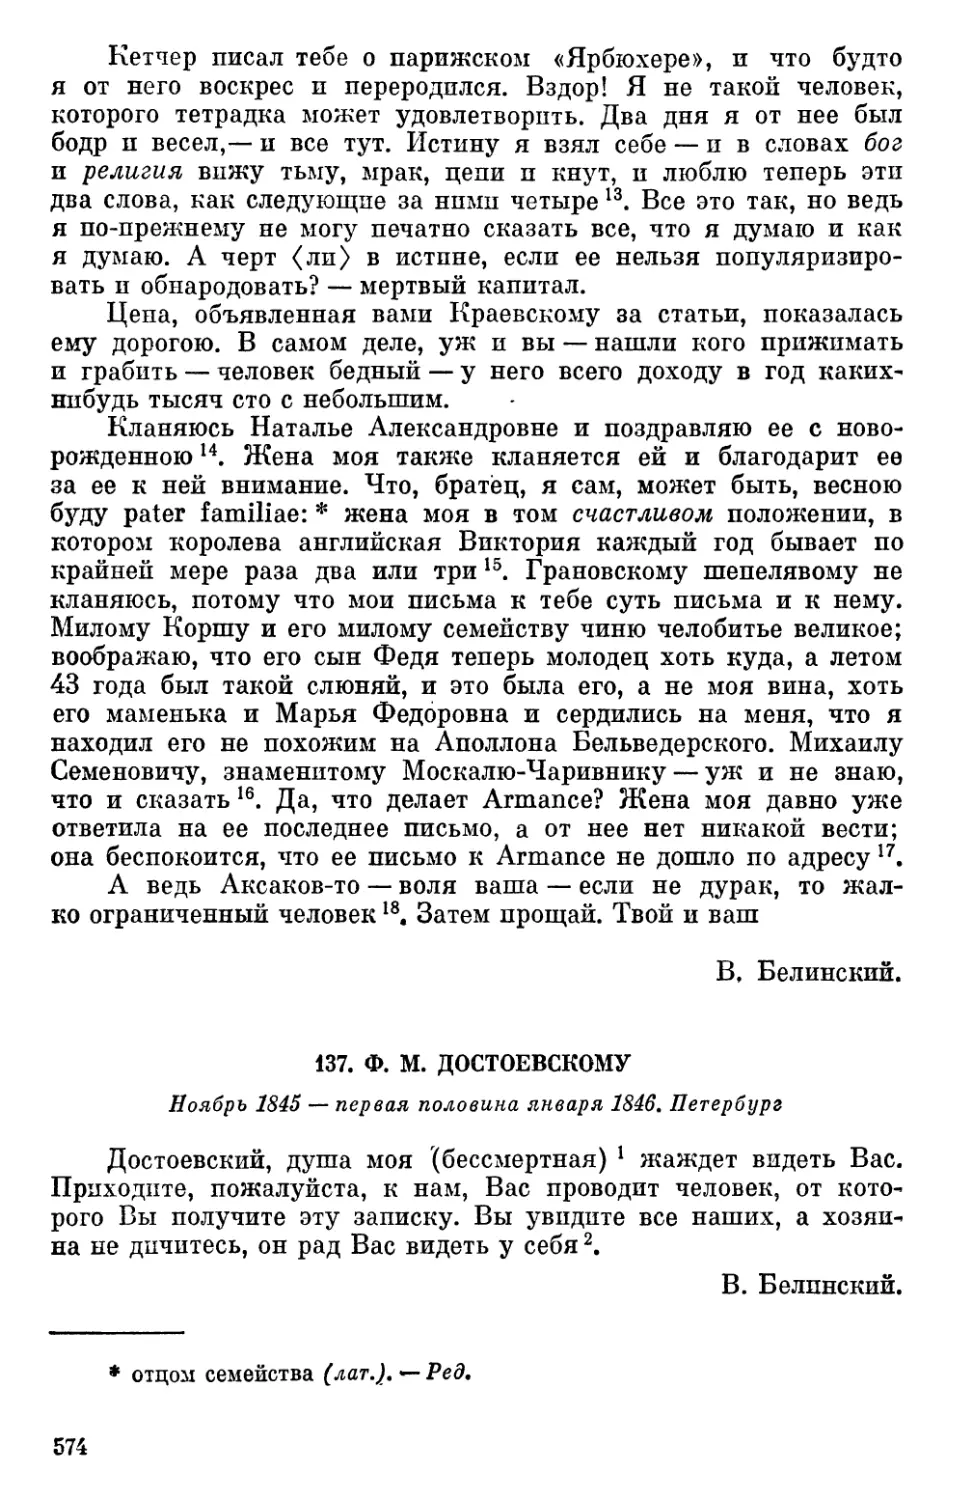 137. Ф. М. Достоевскому. Ноябрь 1845 — первая половина января 1846